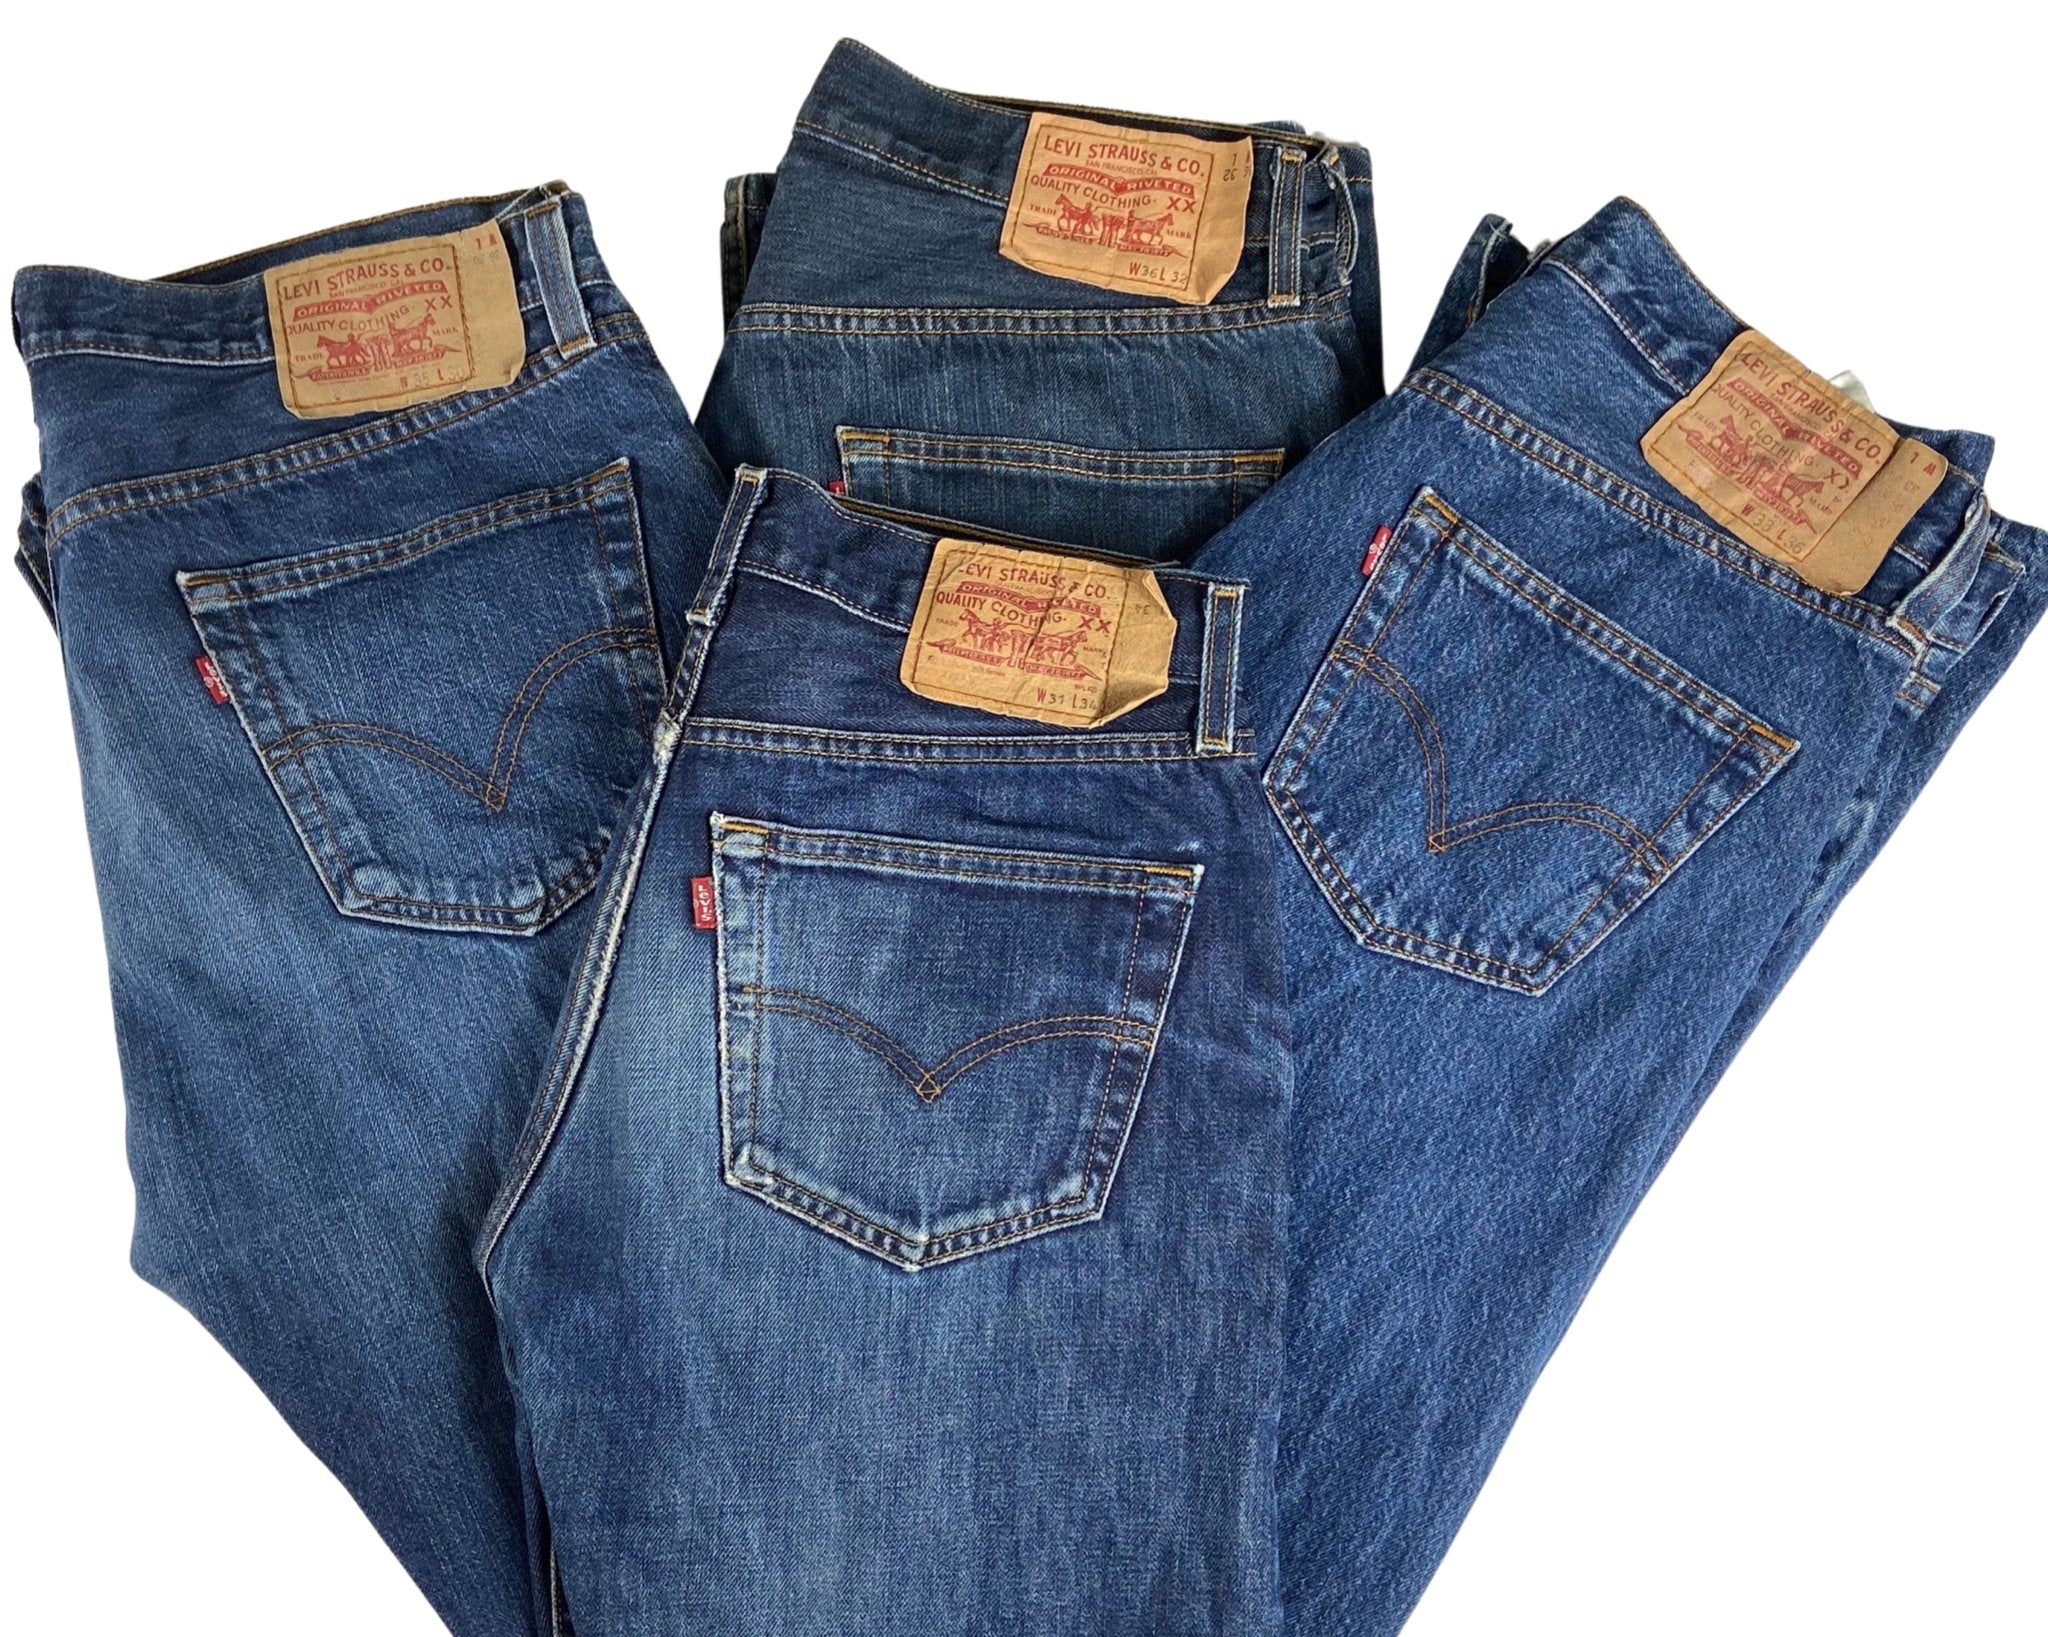 Vintage Levi's Classic Blue Jeans - Waist 40 - Length 30 - Vintage Superstore Online